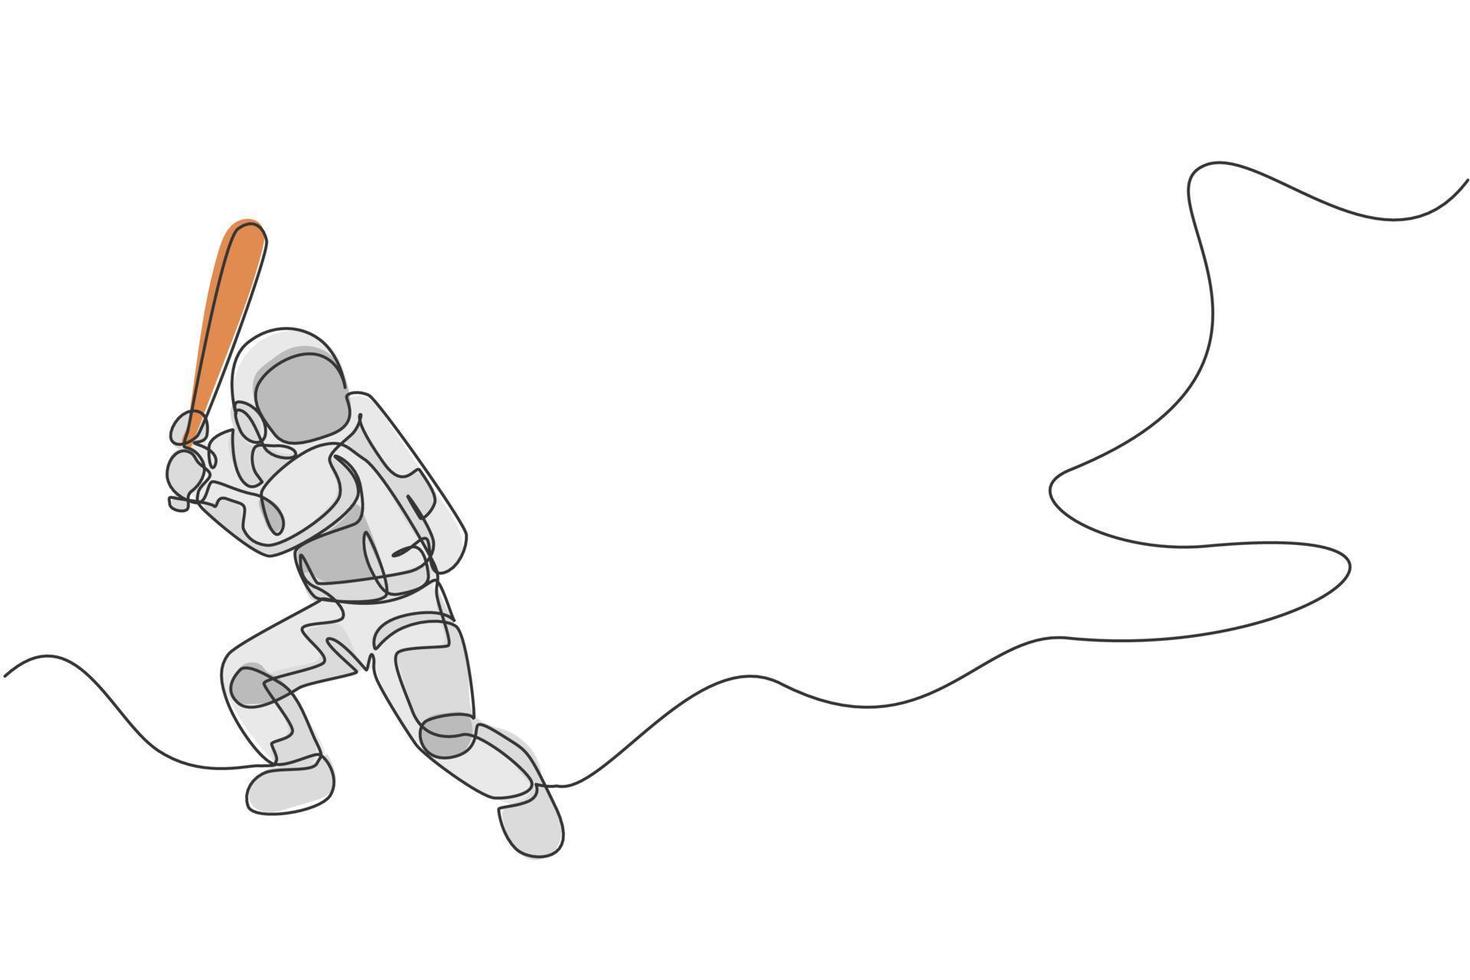 un dessin au trait continu d'un astronaute jouant au baseball dans une galaxie de l'espace lointain. concept de sport de remise en forme sain spaceman. illustration vectorielle de dessin graphique à une seule ligne dynamique vecteur